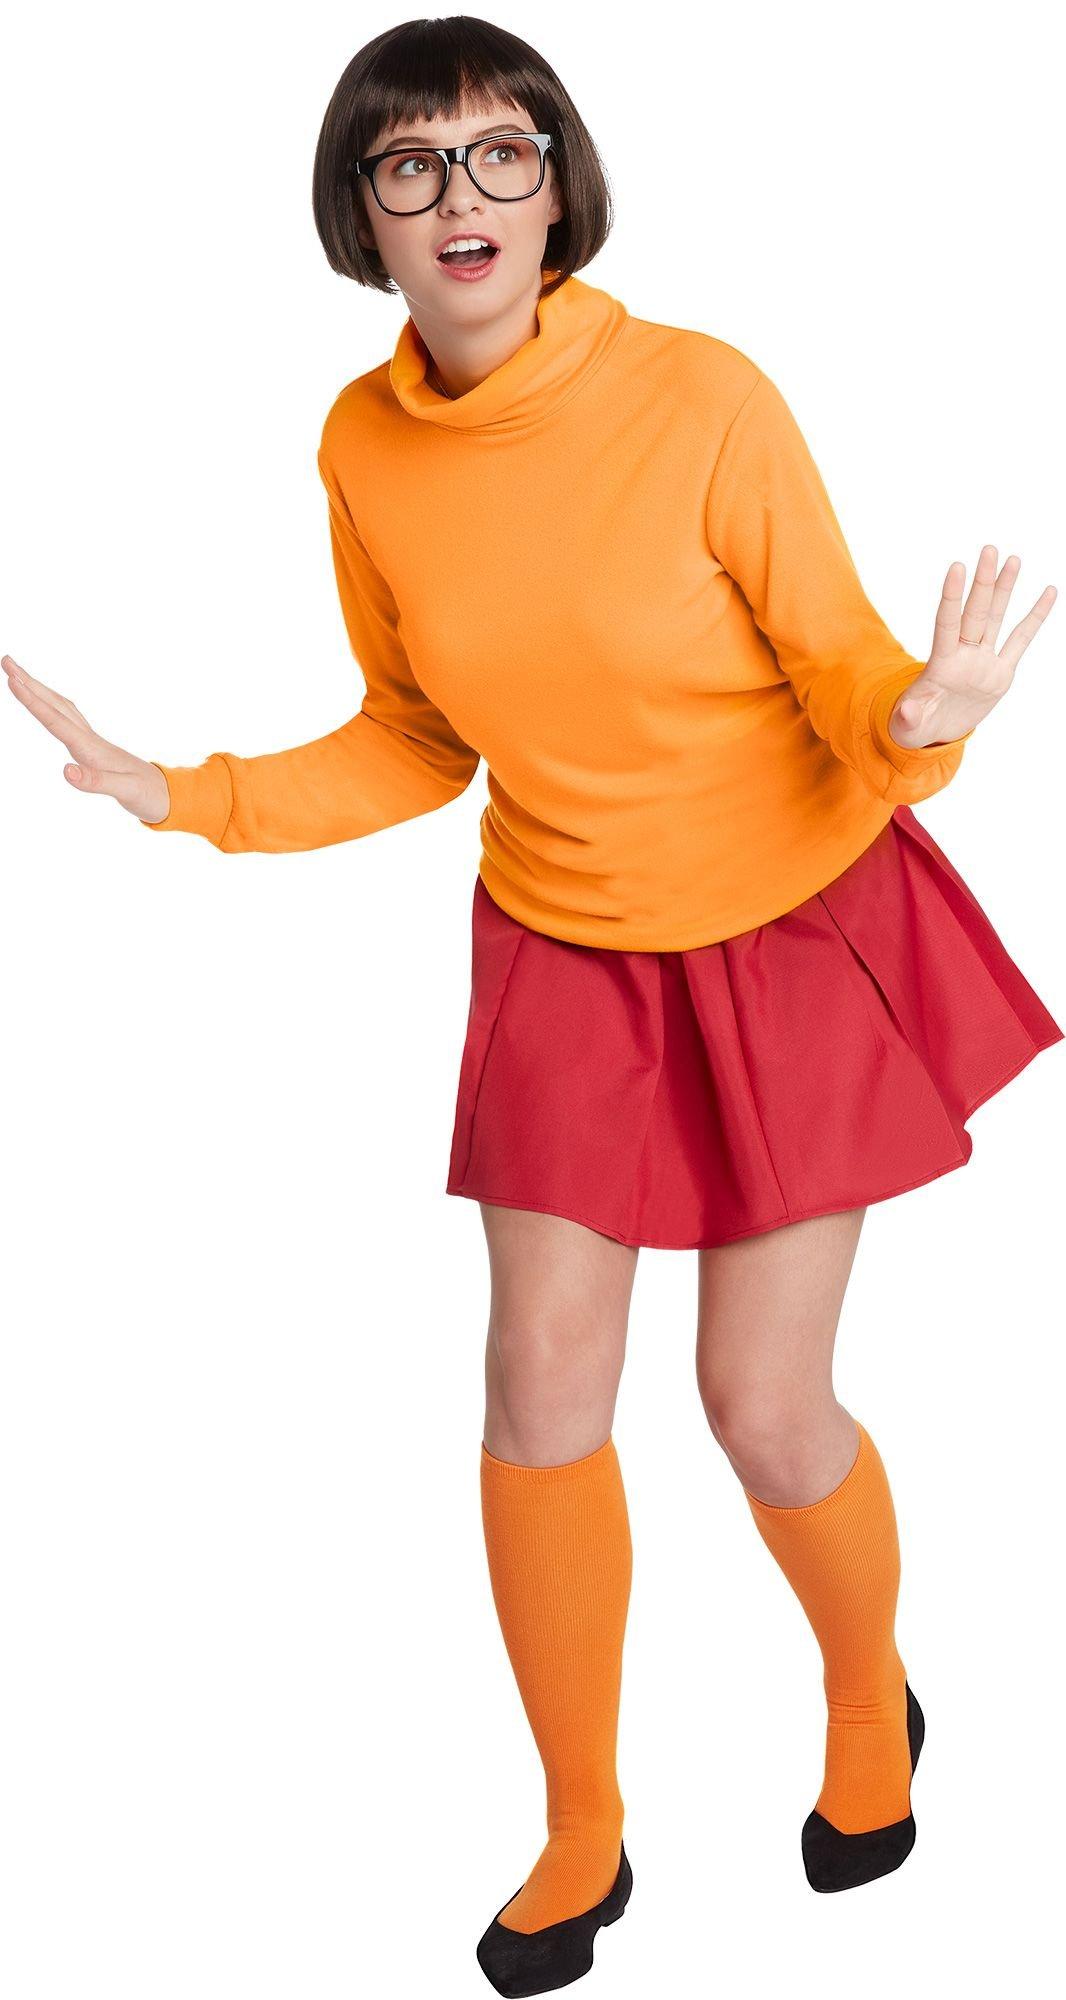 Velma Costume | Party City